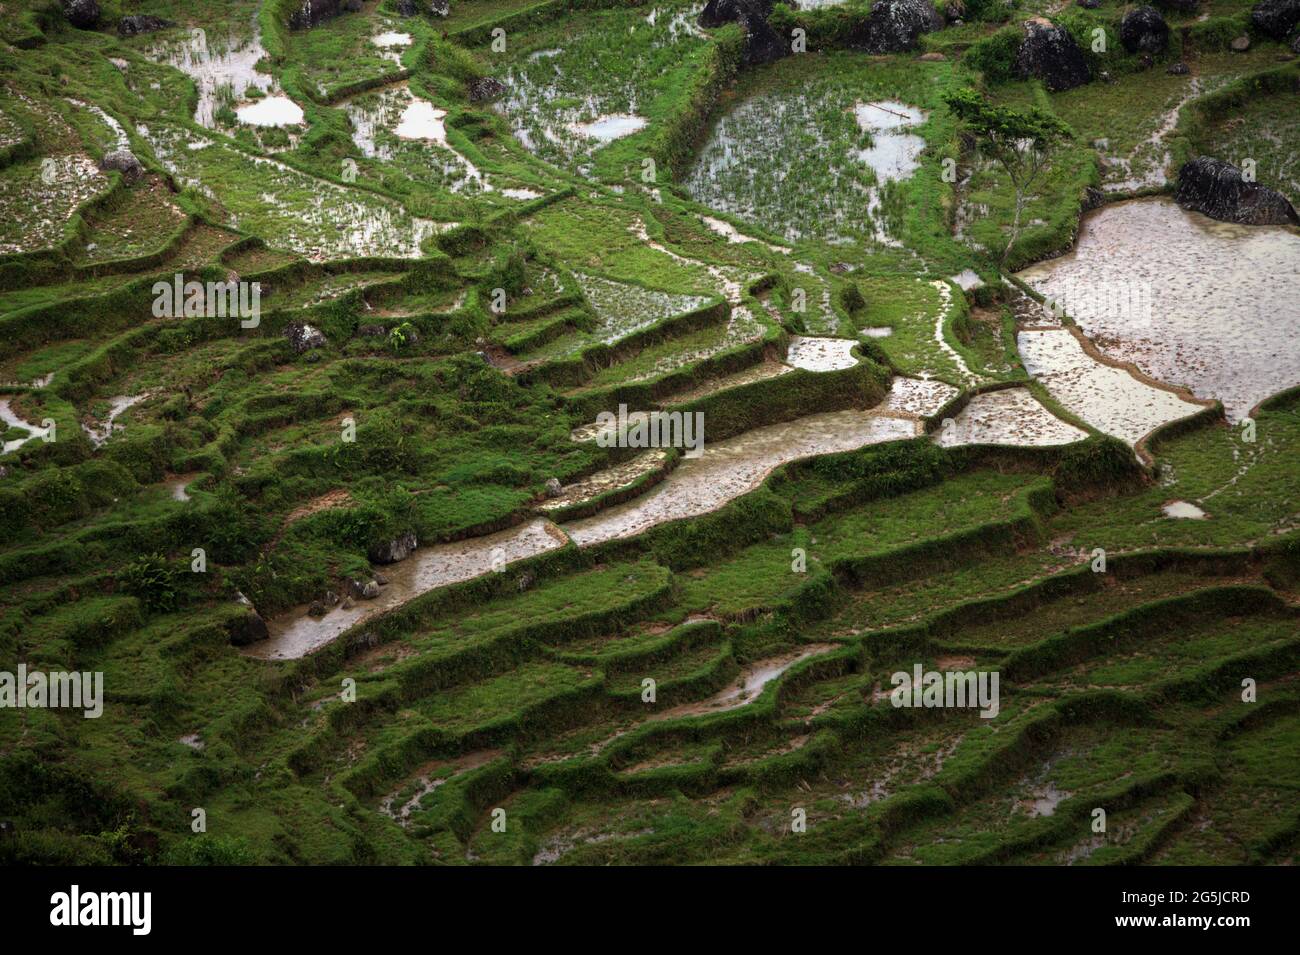 Reisfelder in Batutumonga, Lempo, Nord-Toraja, Süd-Sulawesi, Indonesien. Höhere Temperaturen, die durch die globale Erwärmung verursacht werden, dürften die Reiserträge in Indonesien verringern. Veränderungen der El-Nino-Muster, die den Beginn und die Dauer der Regenzeit beeinflussen, bringen auch die landwirtschaftliche Produktion in einen anfälligen Status. Die Entwicklung neuer oder verbesserter lokaler Reissorten, die widerstandsfähiger sind - wie jüngste Studien in anderen Ländern - könnte einer der Schlüssel zur Milderung sein. Stockfoto